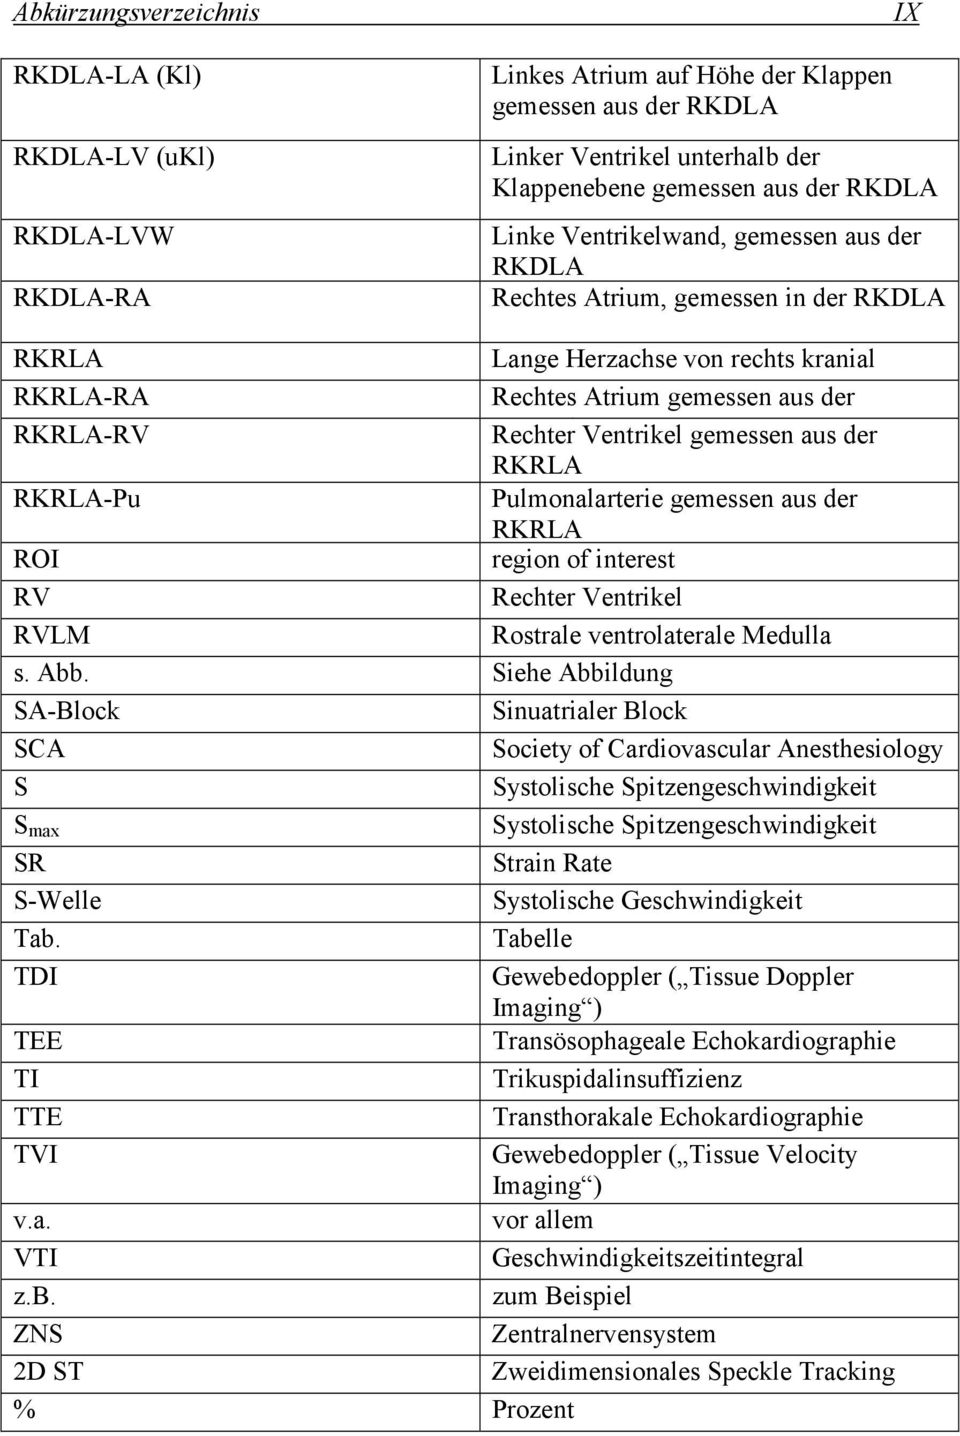 Rechter RKRLA Ventrikel gemessen aus der RKRLA Pulmonalarterie gemessen aus der RKRLA region of interest Rechter Ventrikel Rostrale ventrolaterale Medulla s. Abb.